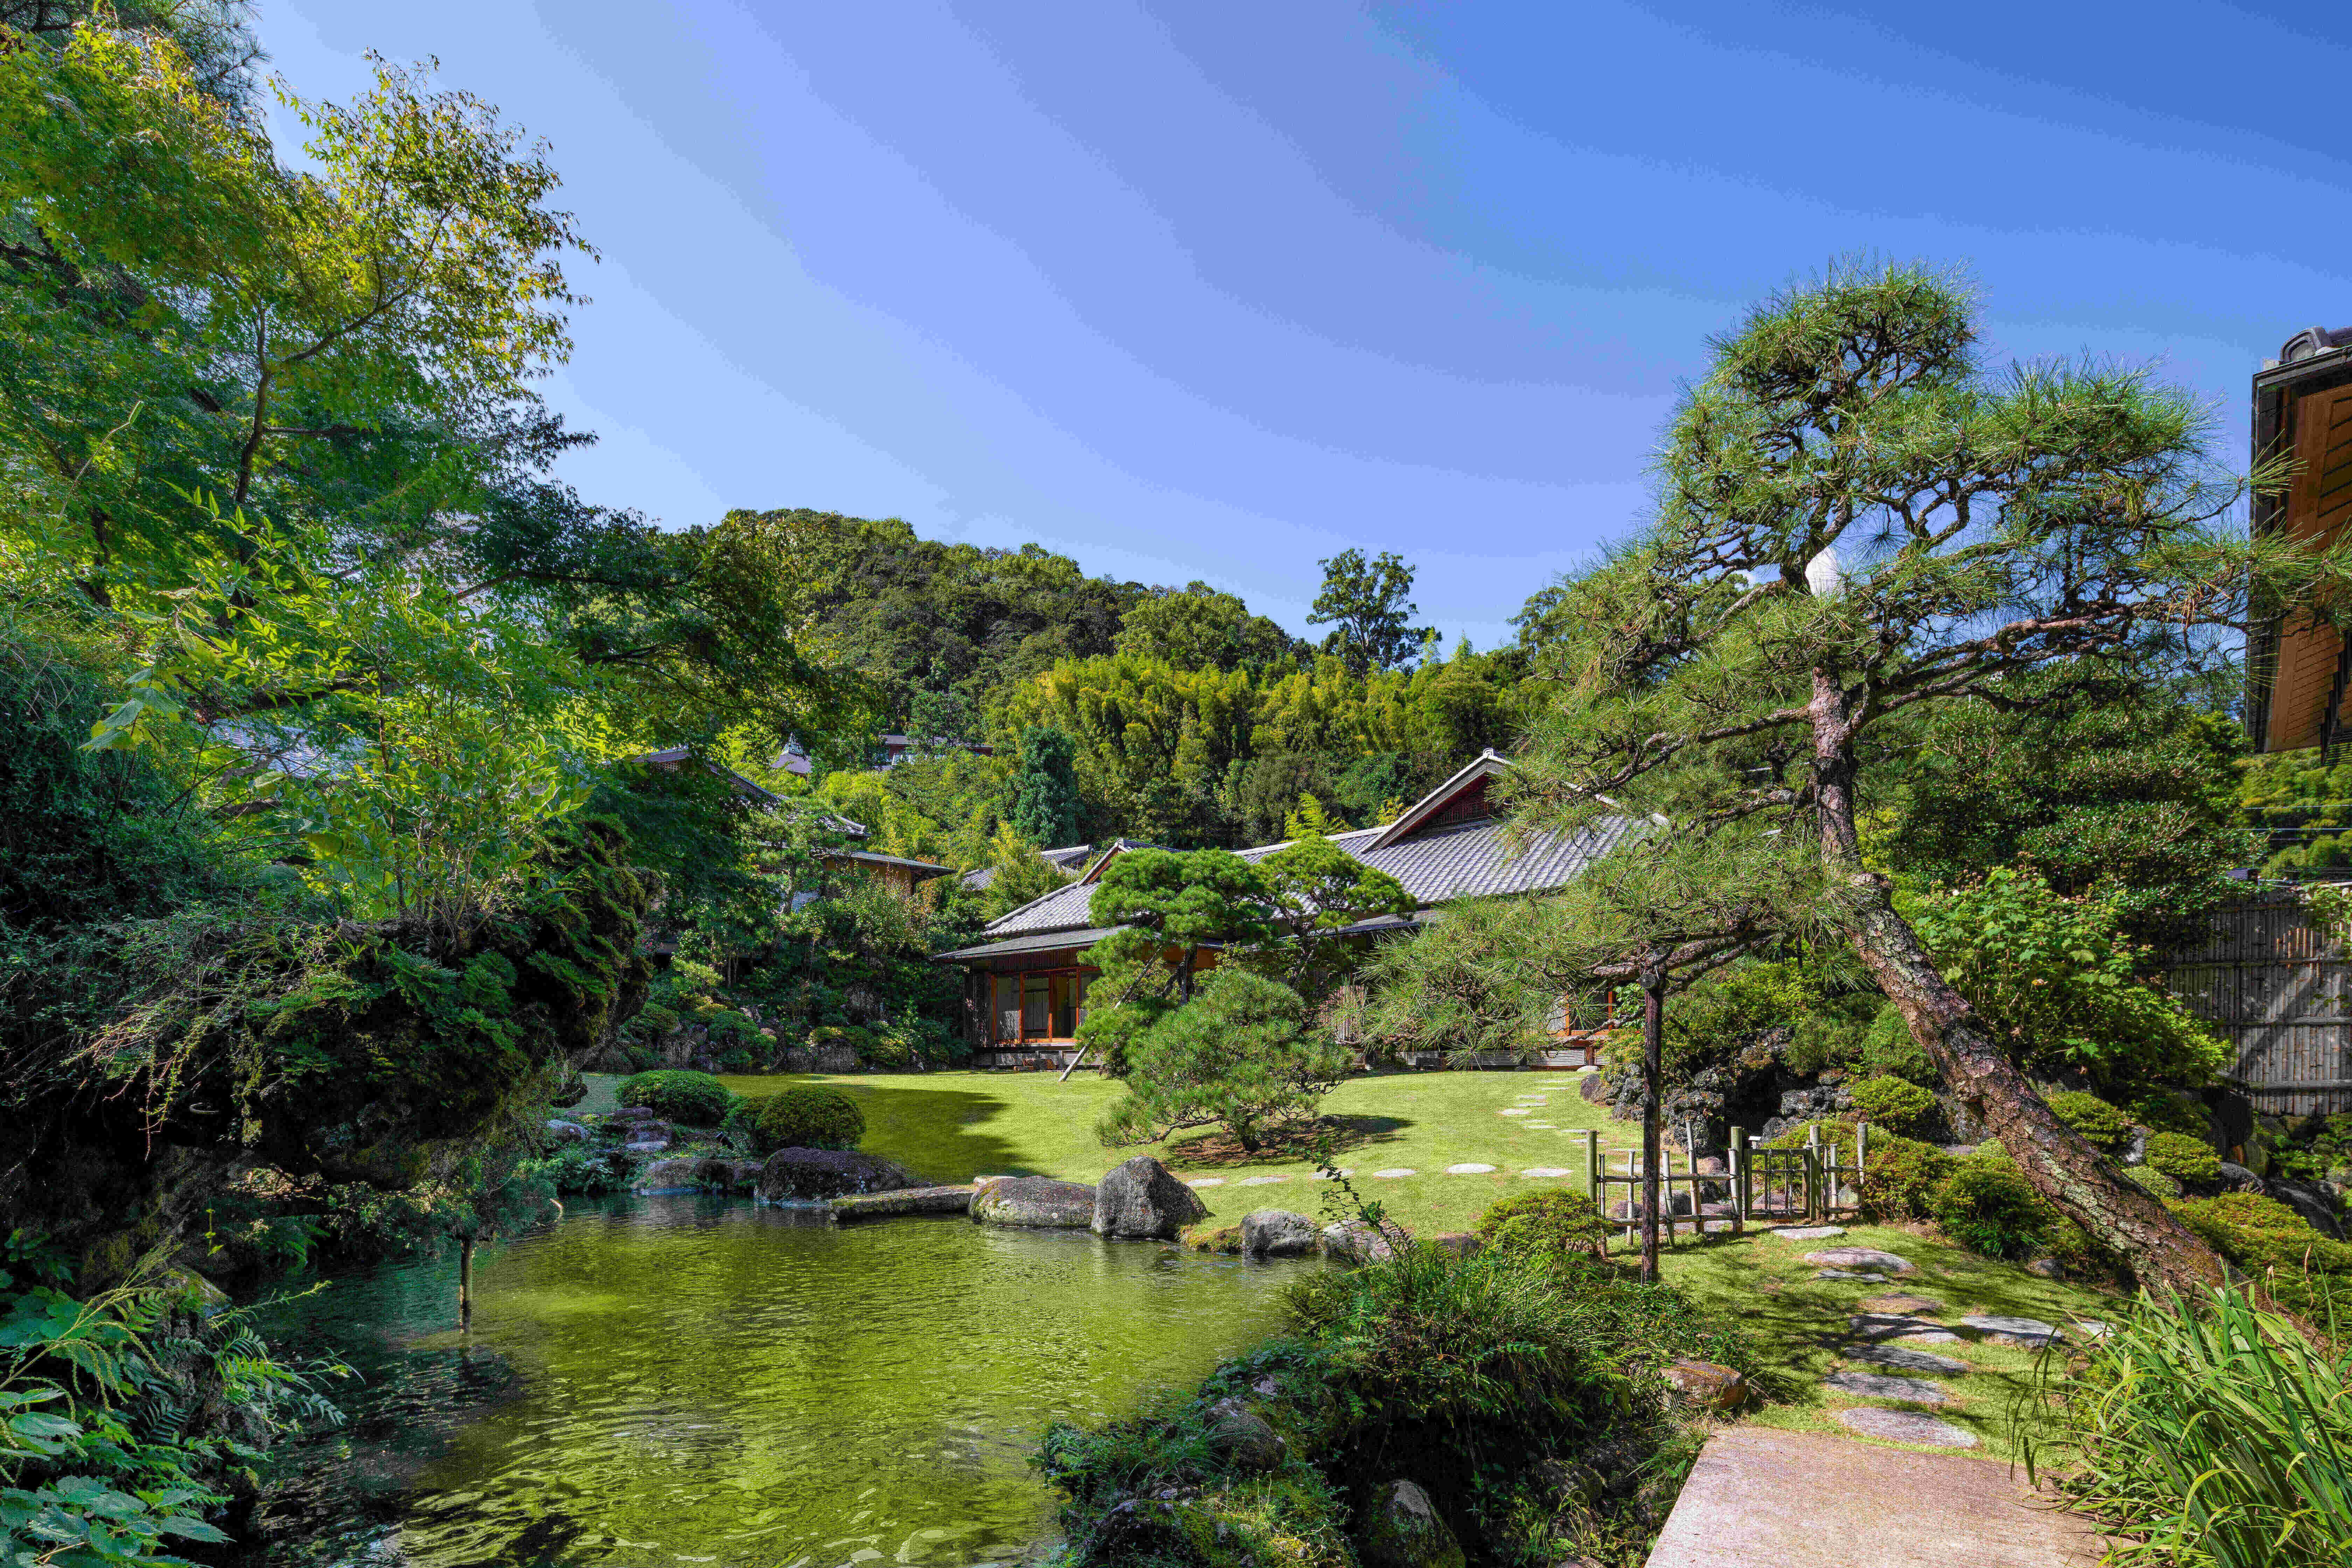 敷地内に広がる日本庭園は、造園界で名高い斎藤一夫博士に監修されました。
自然との調和がとれた演出、そして本館と庭園を結ぶ石造りの散策路もまた、和の風情を豊かに感じさせてくれます。